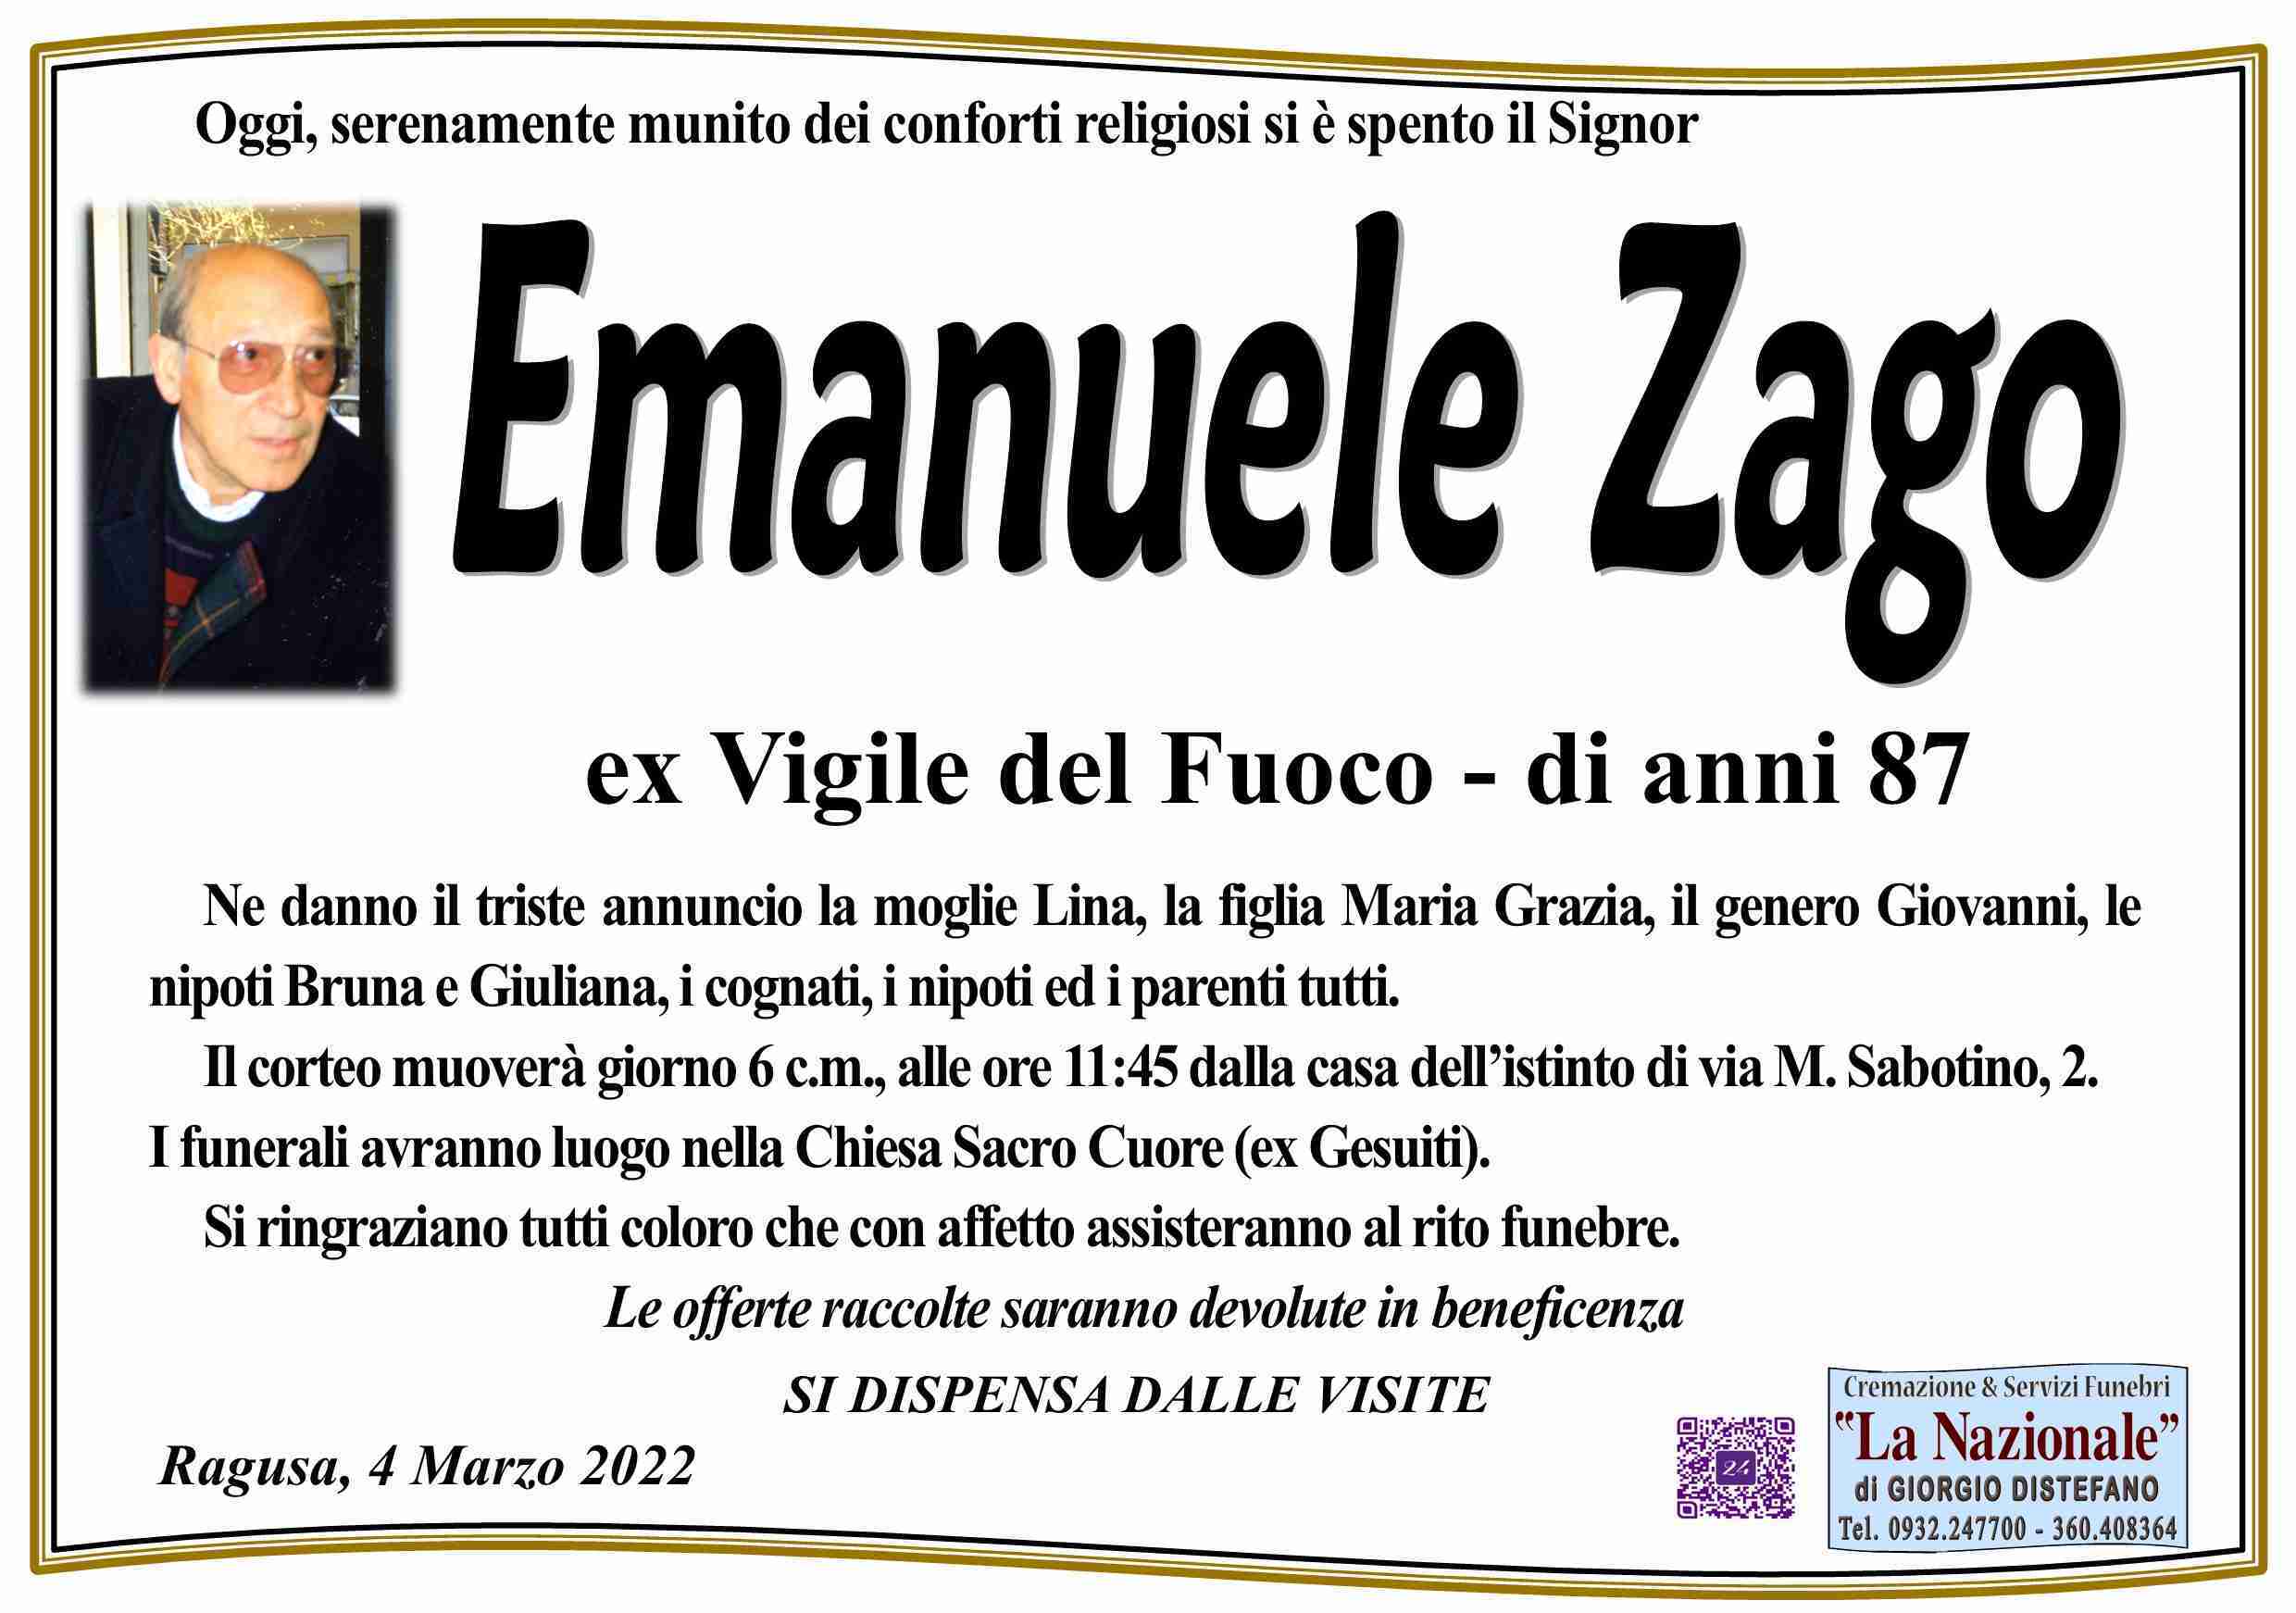 Emanuele Zago